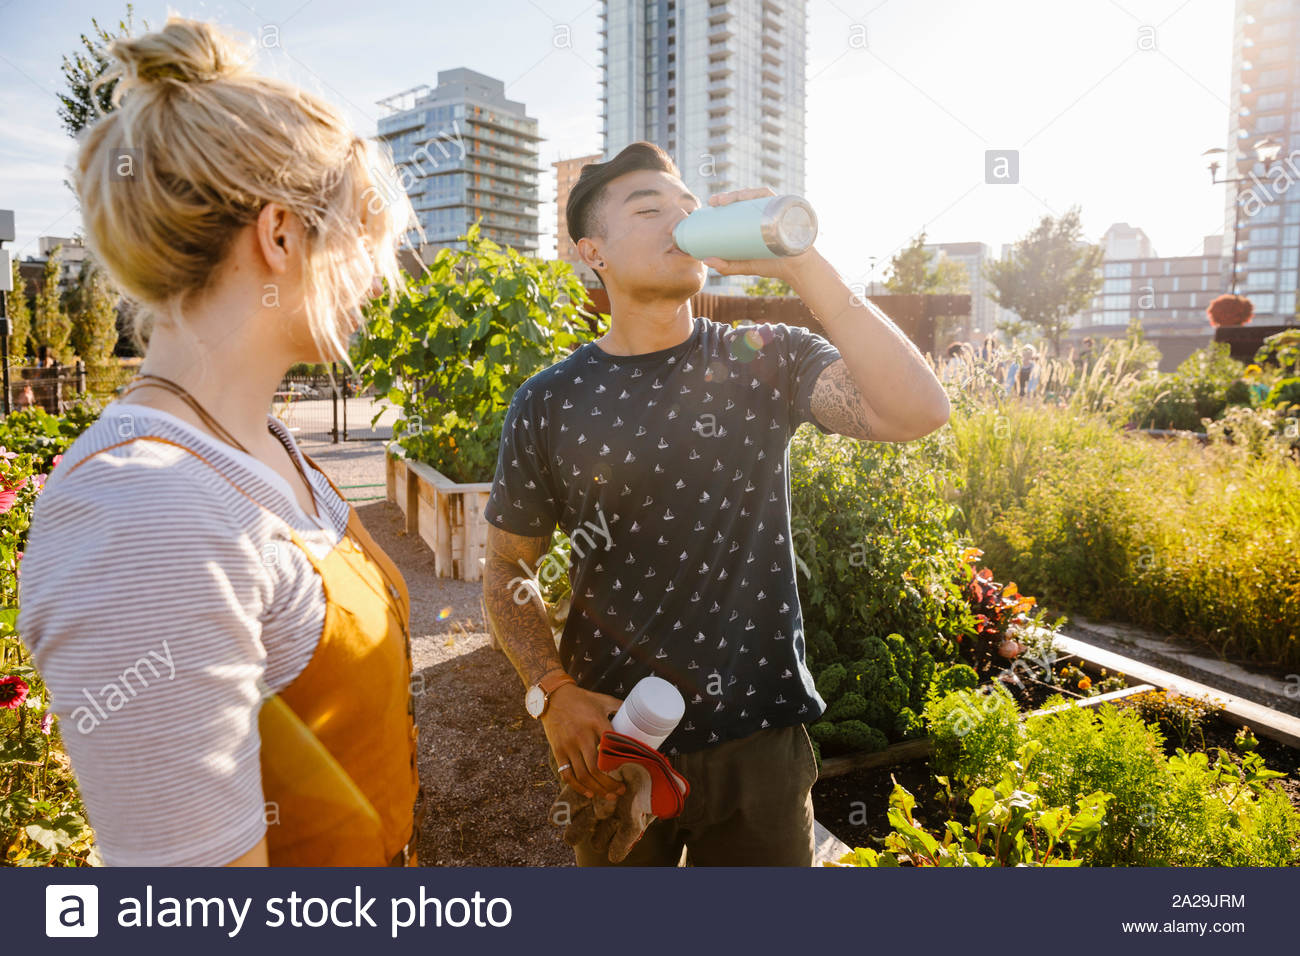 Jeune homme à partir de l'eau potable en bouteille, communauté urbaine jardin ensoleillé Banque D'Images